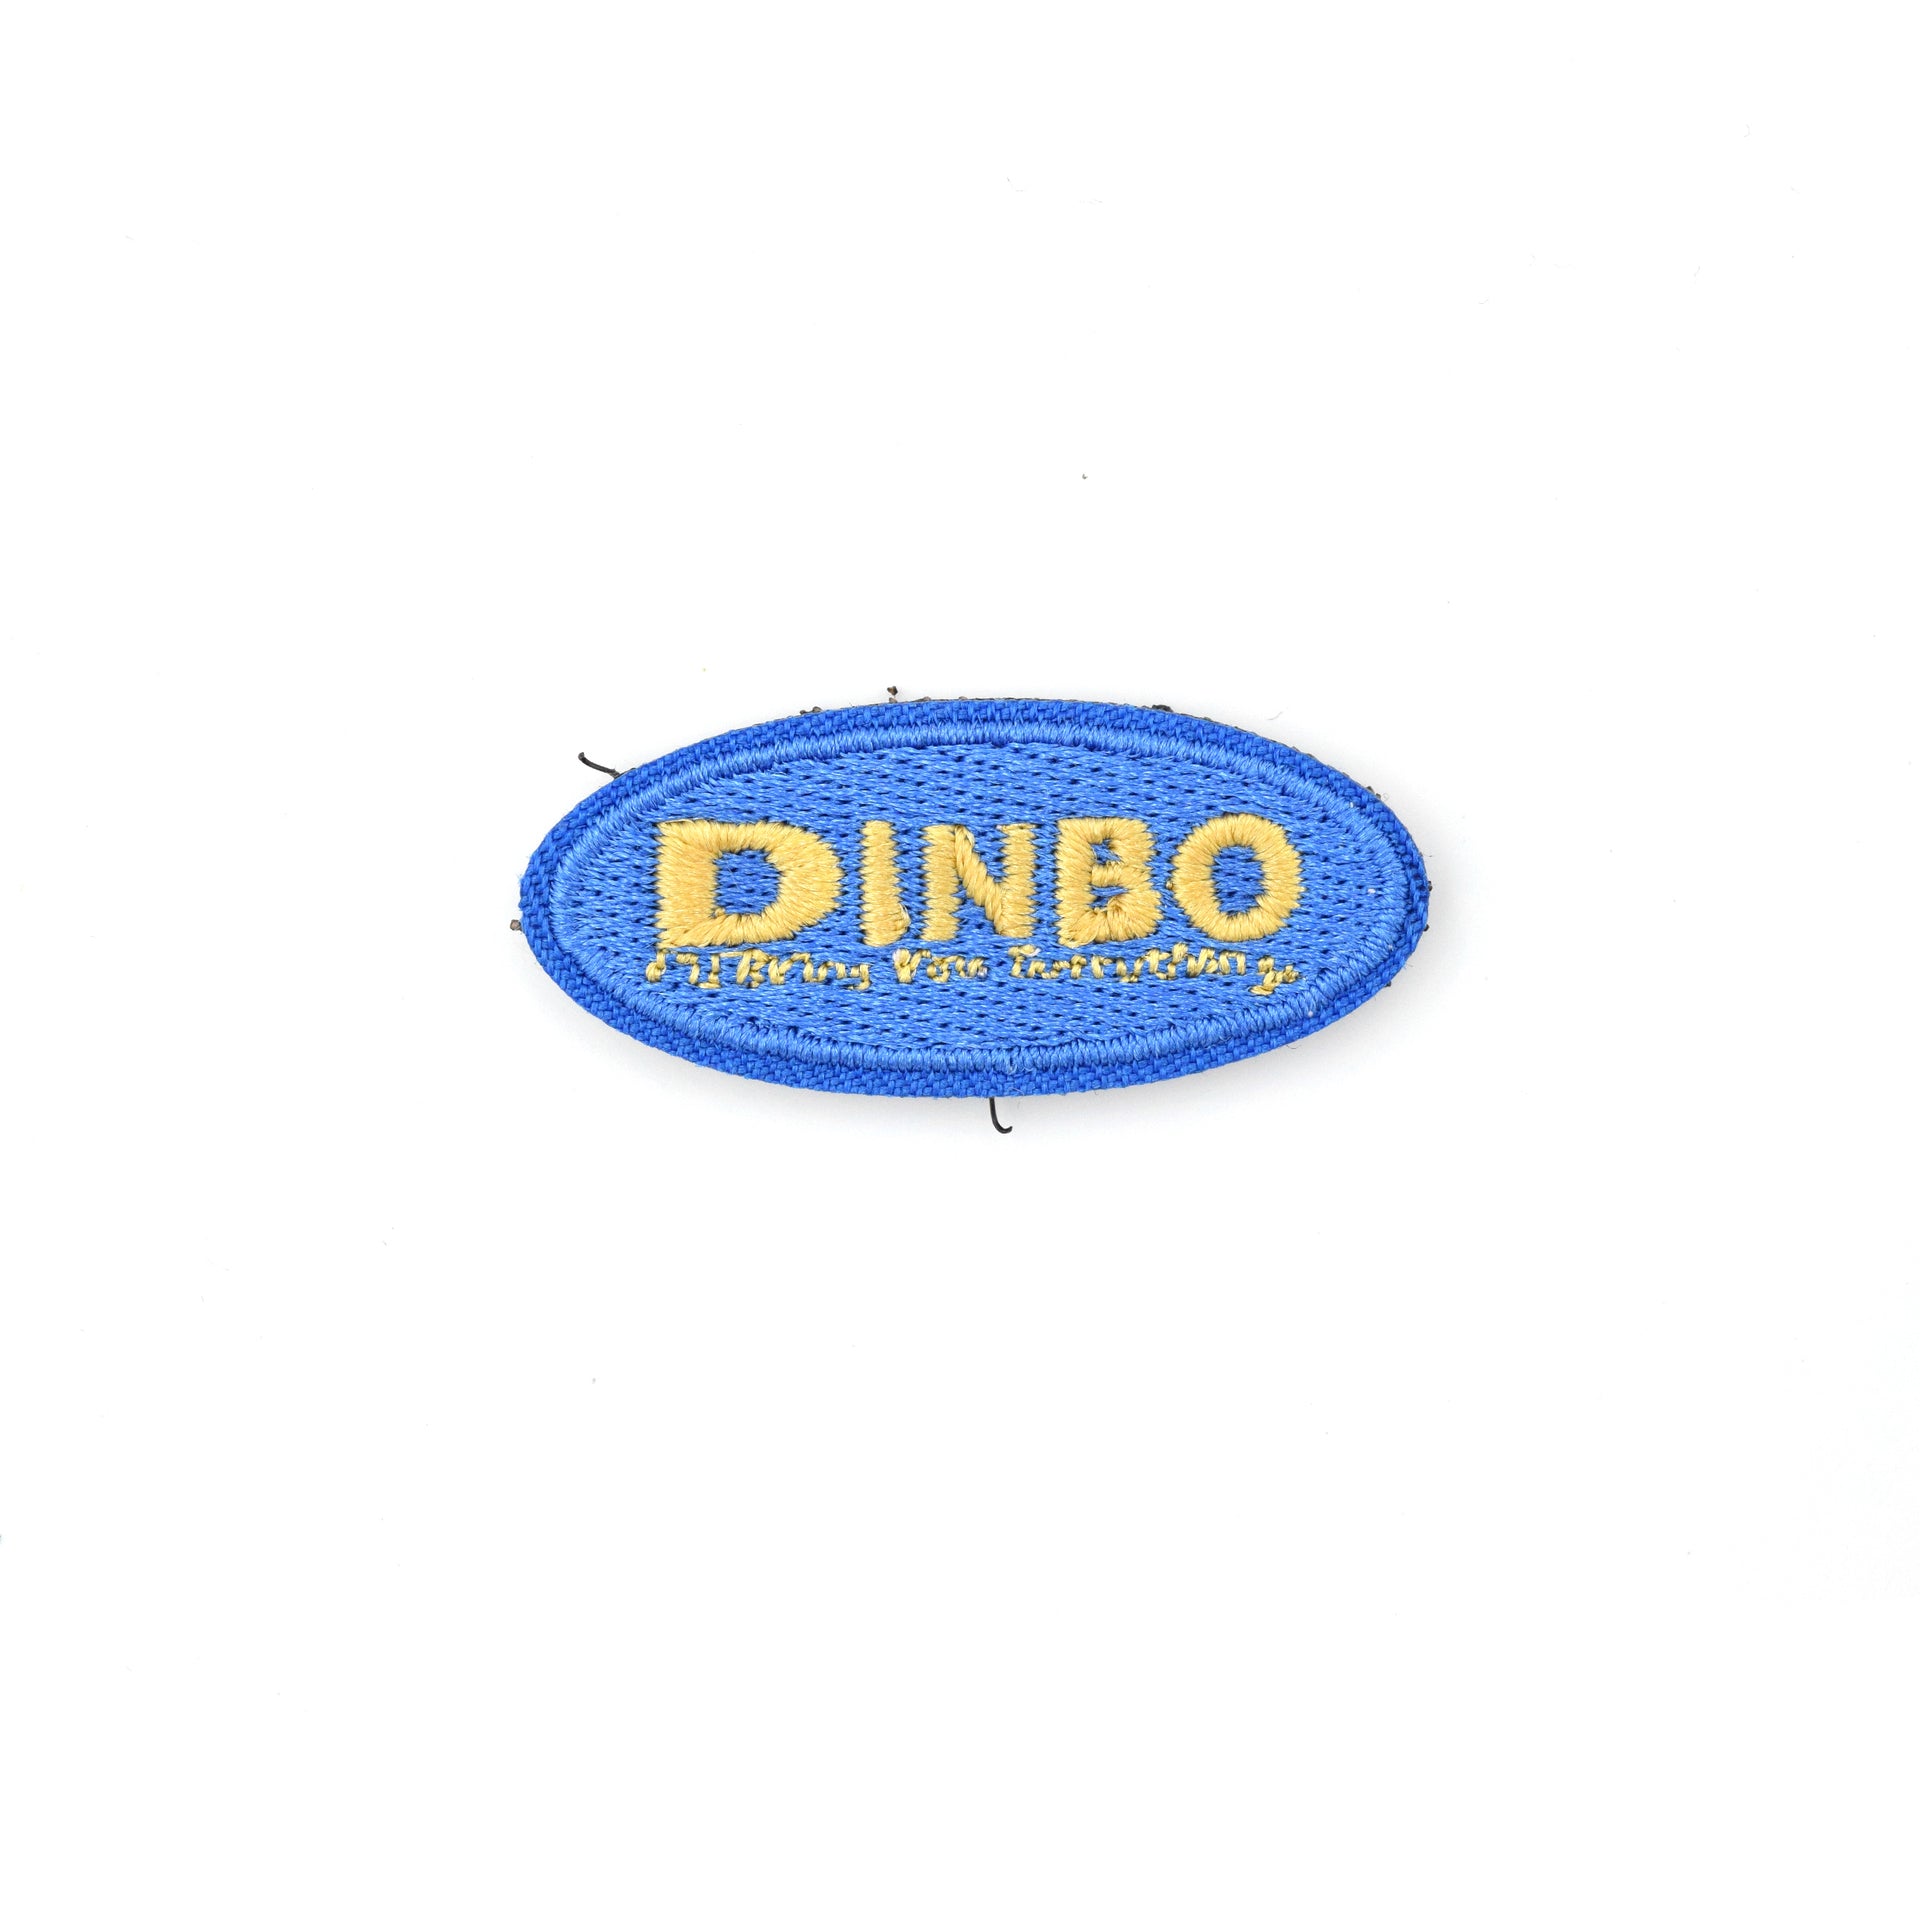 Dinbo Patch